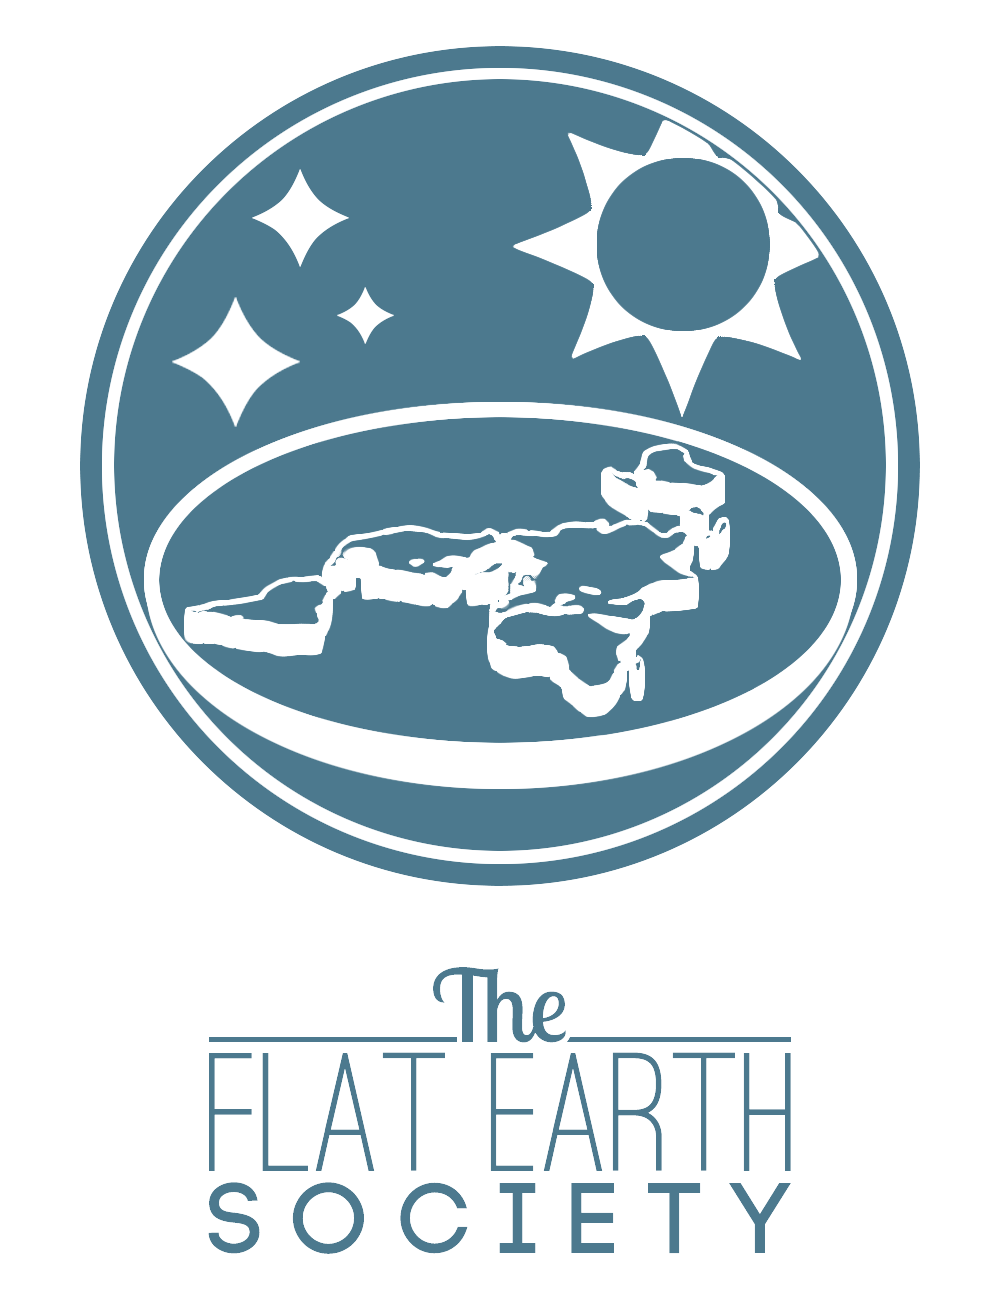 flat earth society stupid